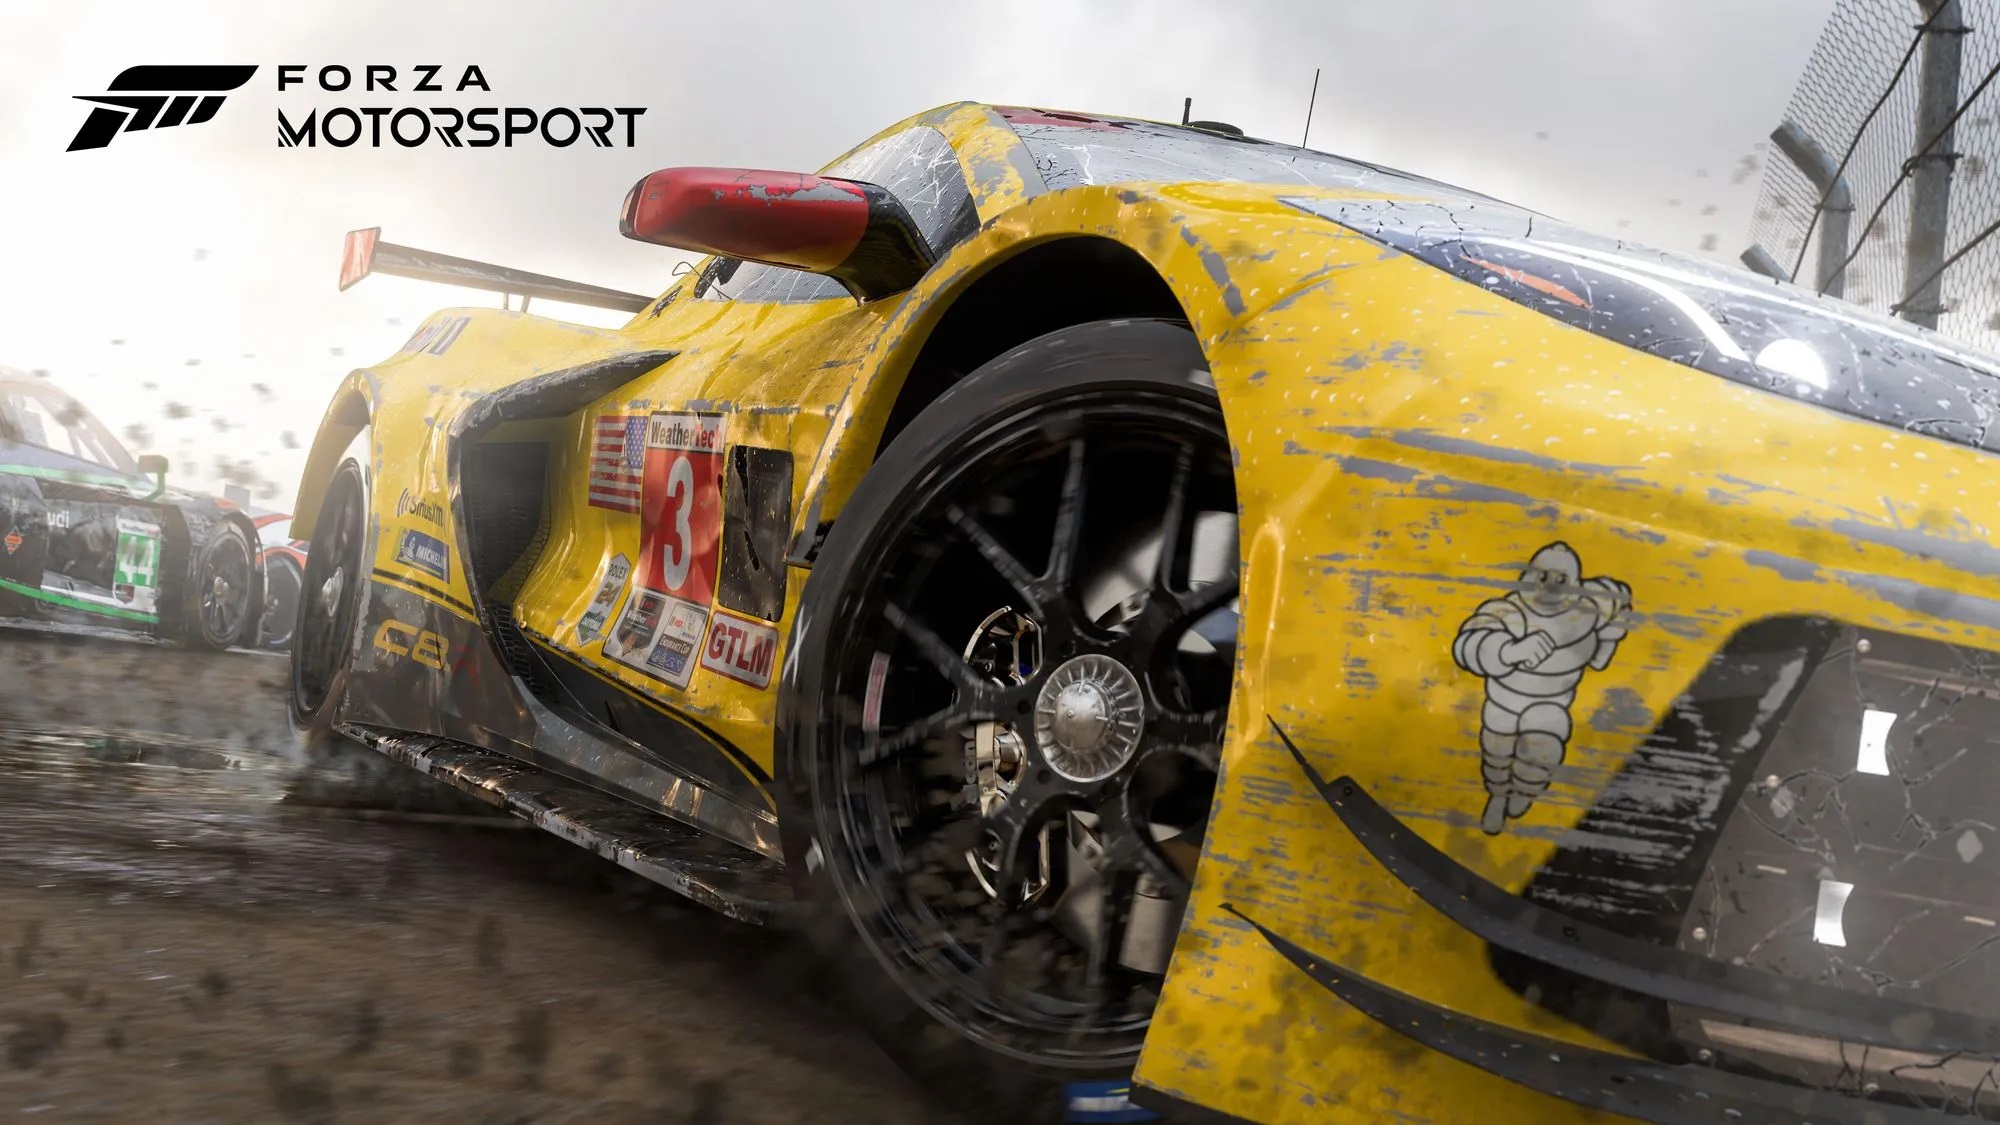 Novo Forza Motorsport fica ainda mais realista; assista ao trailer do game